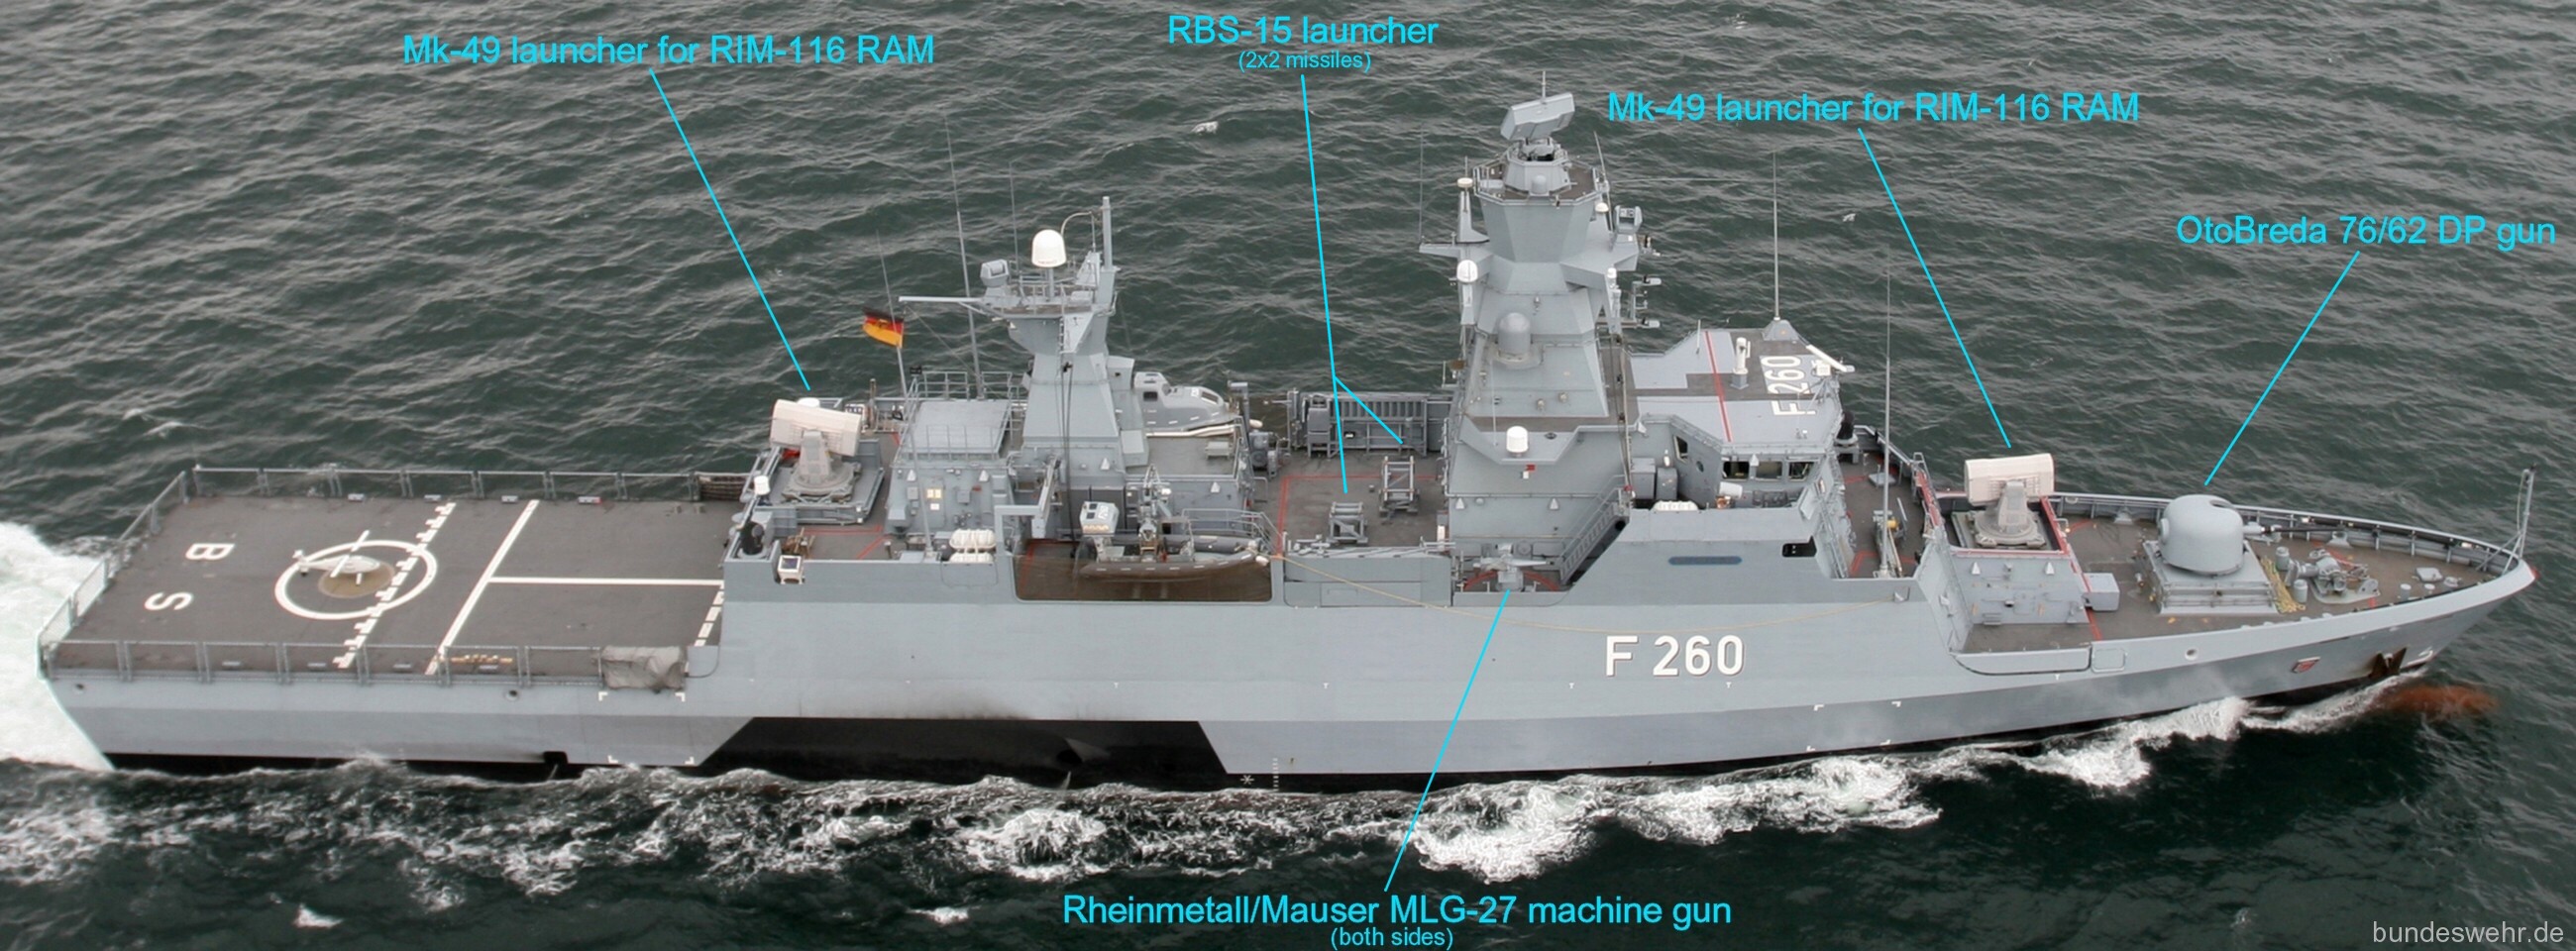 type k130 braunschweig class corvette german navy armament mk-49 rim-116 ram launcher rbs-15 ssm missile otobreda 76/62 gun rheinmetall mauser mlg-27